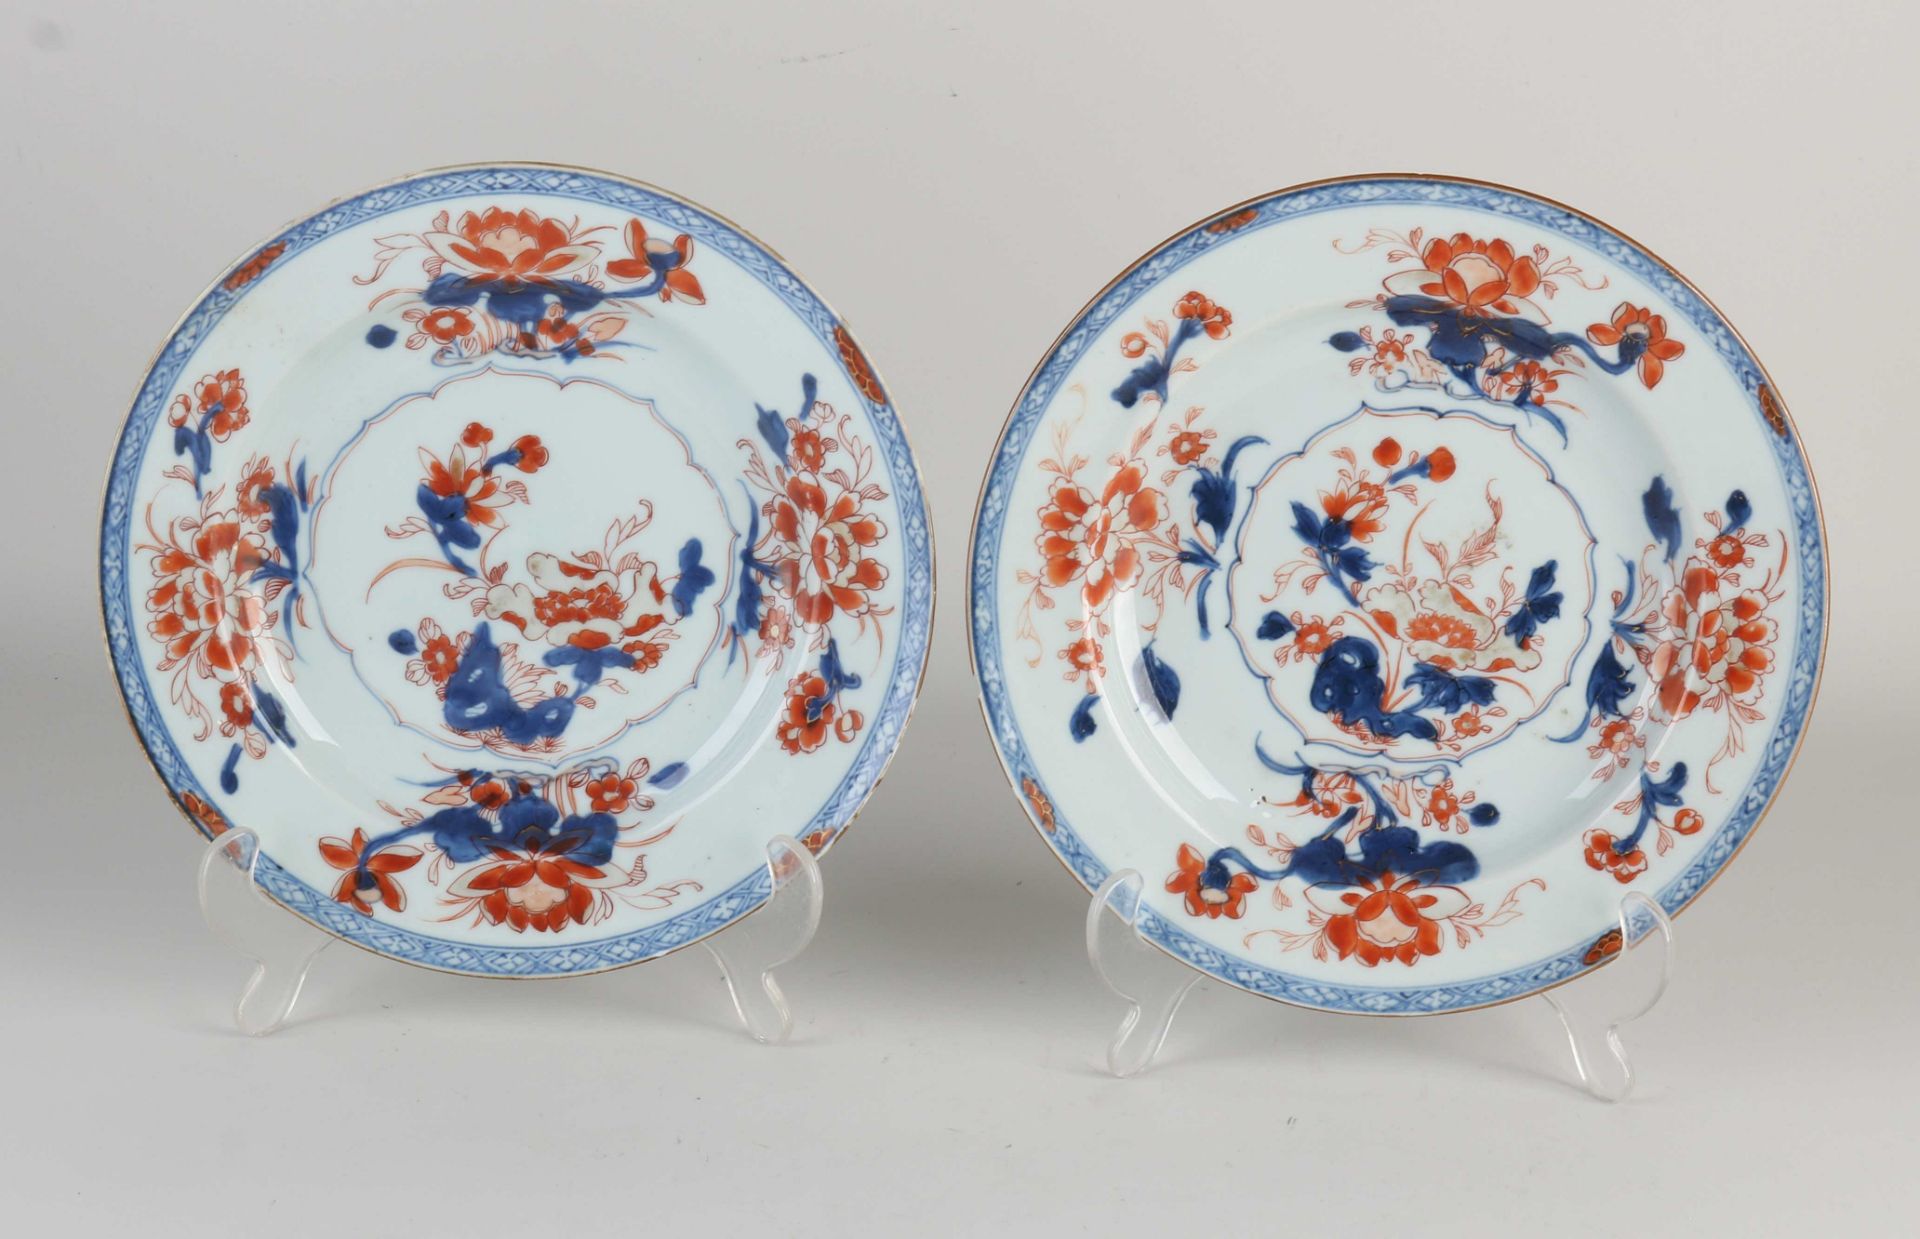 Two 18th century Chinese Imari plates, Ø 22.7 cm.